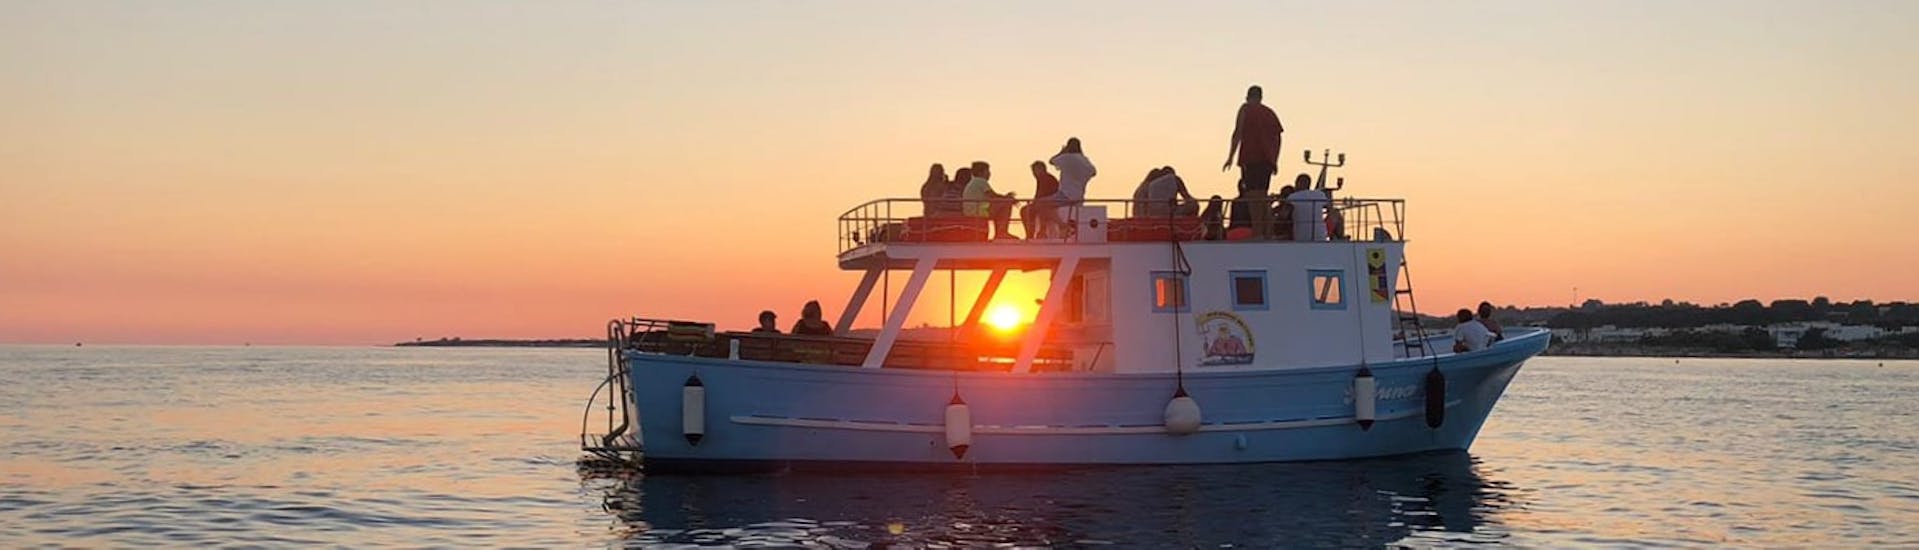 Il meraviglioso e colorato tramonto che potrete ammirare durante il giro in barca alle grotte del Salento al tramonto con Noleggio Nettuno Torre Vado.